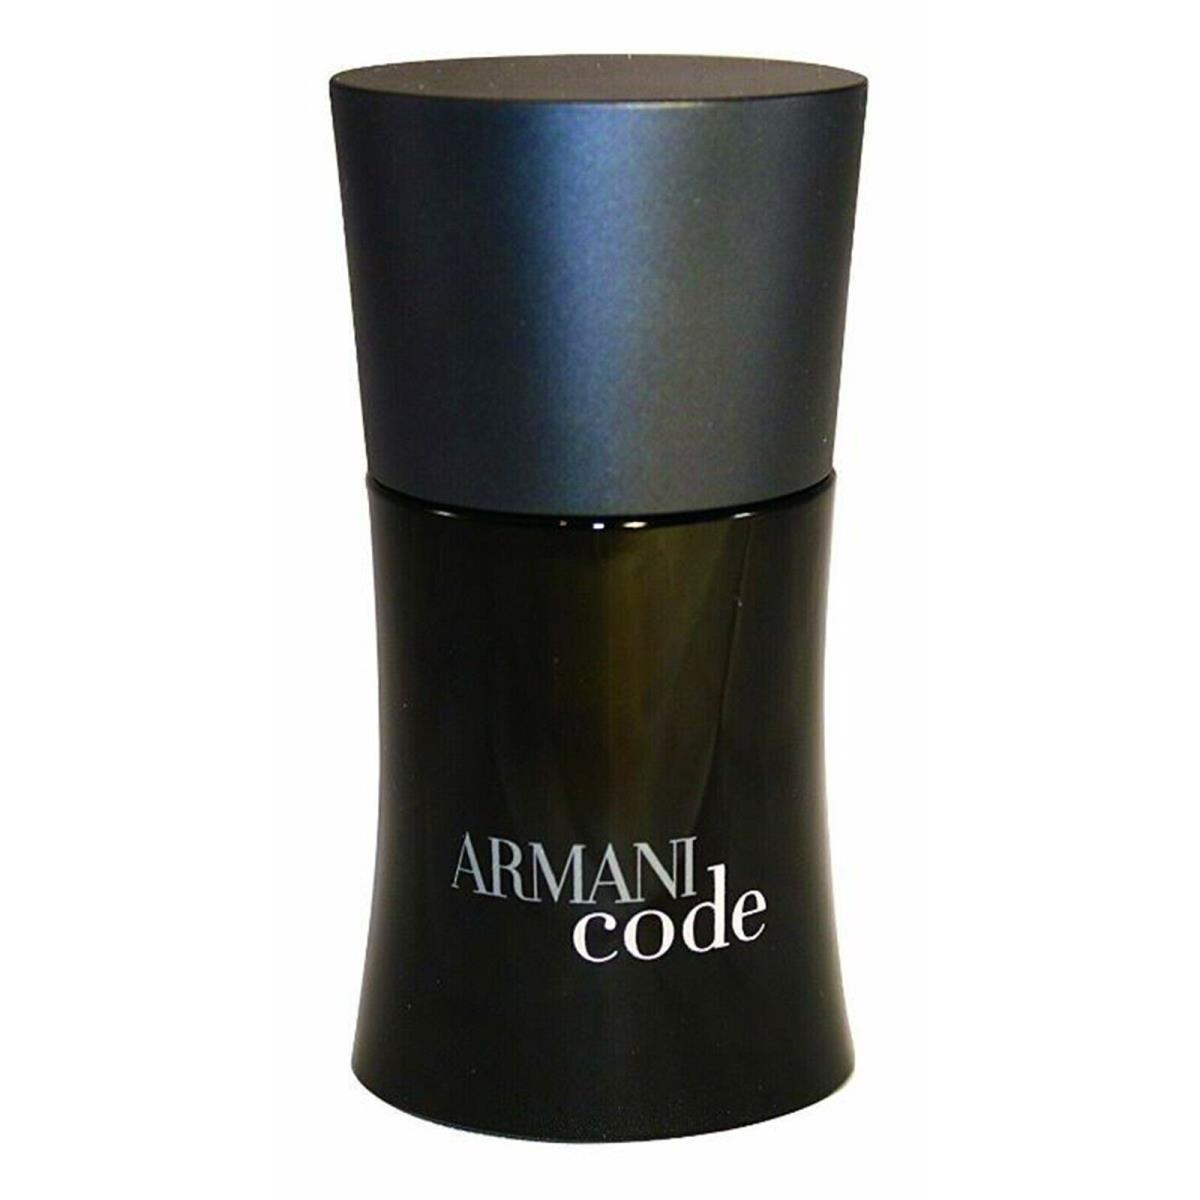 Armani Code Cologne by Giorgio Armani Men Perfume Eau De Toilette Spray 1 oz Edt